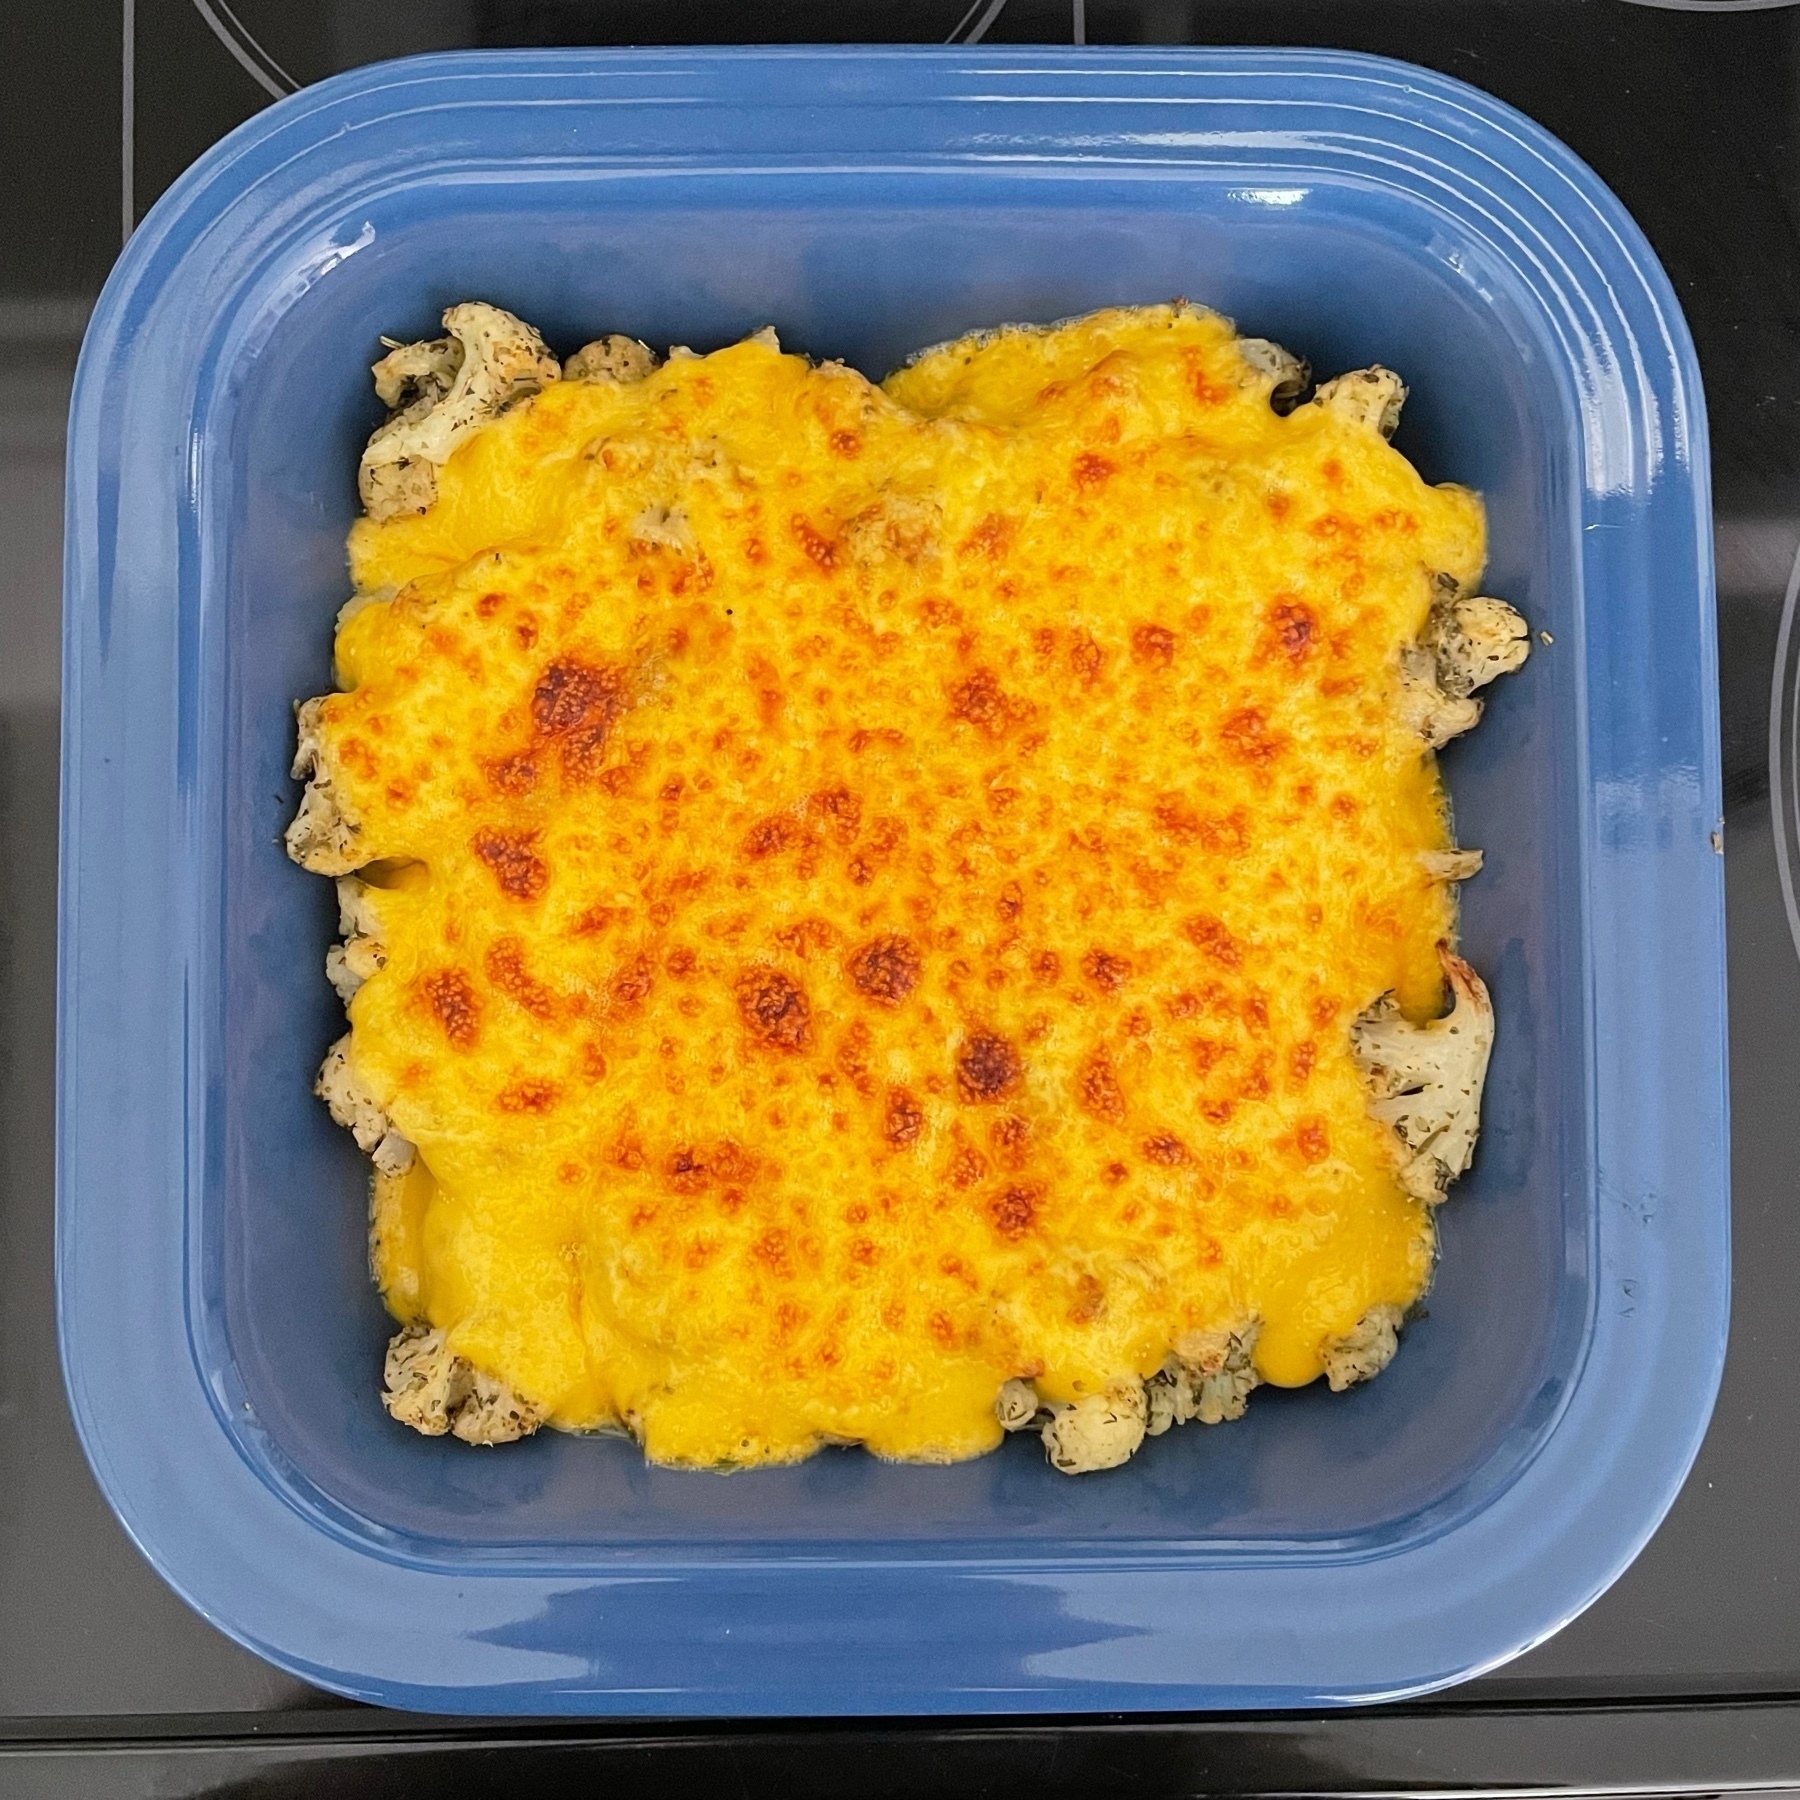 Cauliflower Mac and Cheese in dish